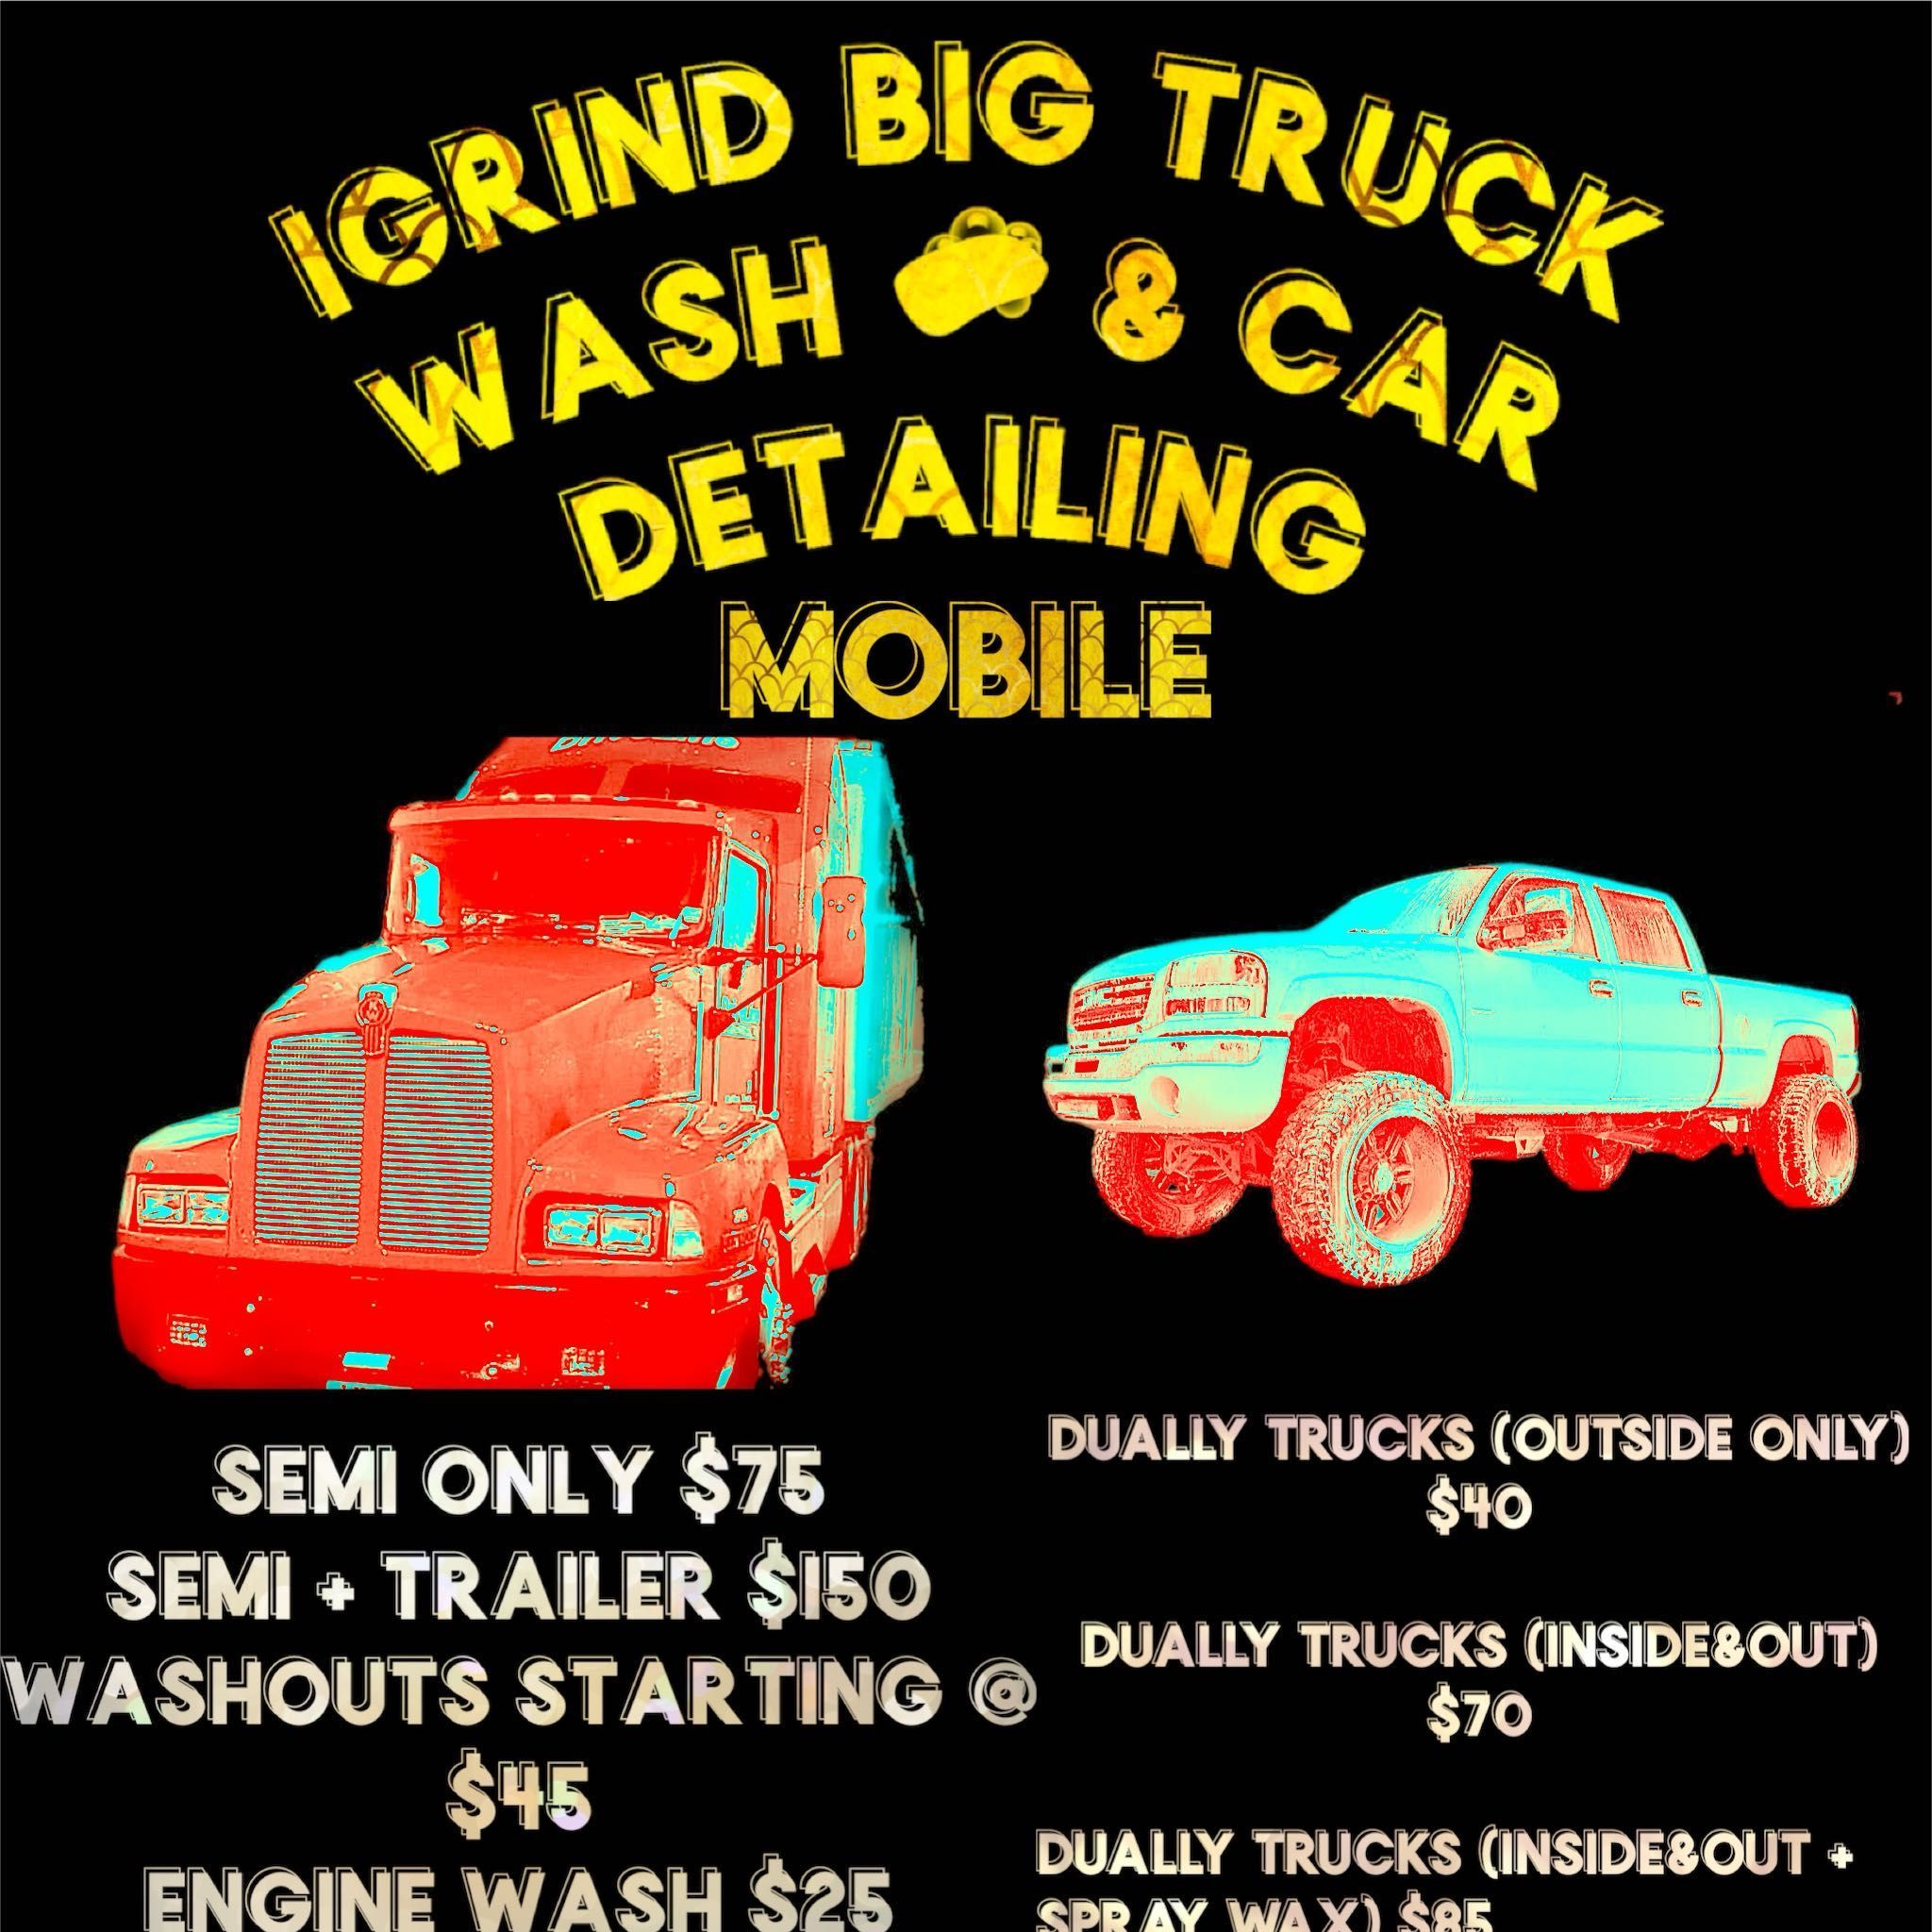 IGRIND Big Truck Wash & Car Detailing, Royal Palm Beach, 33411